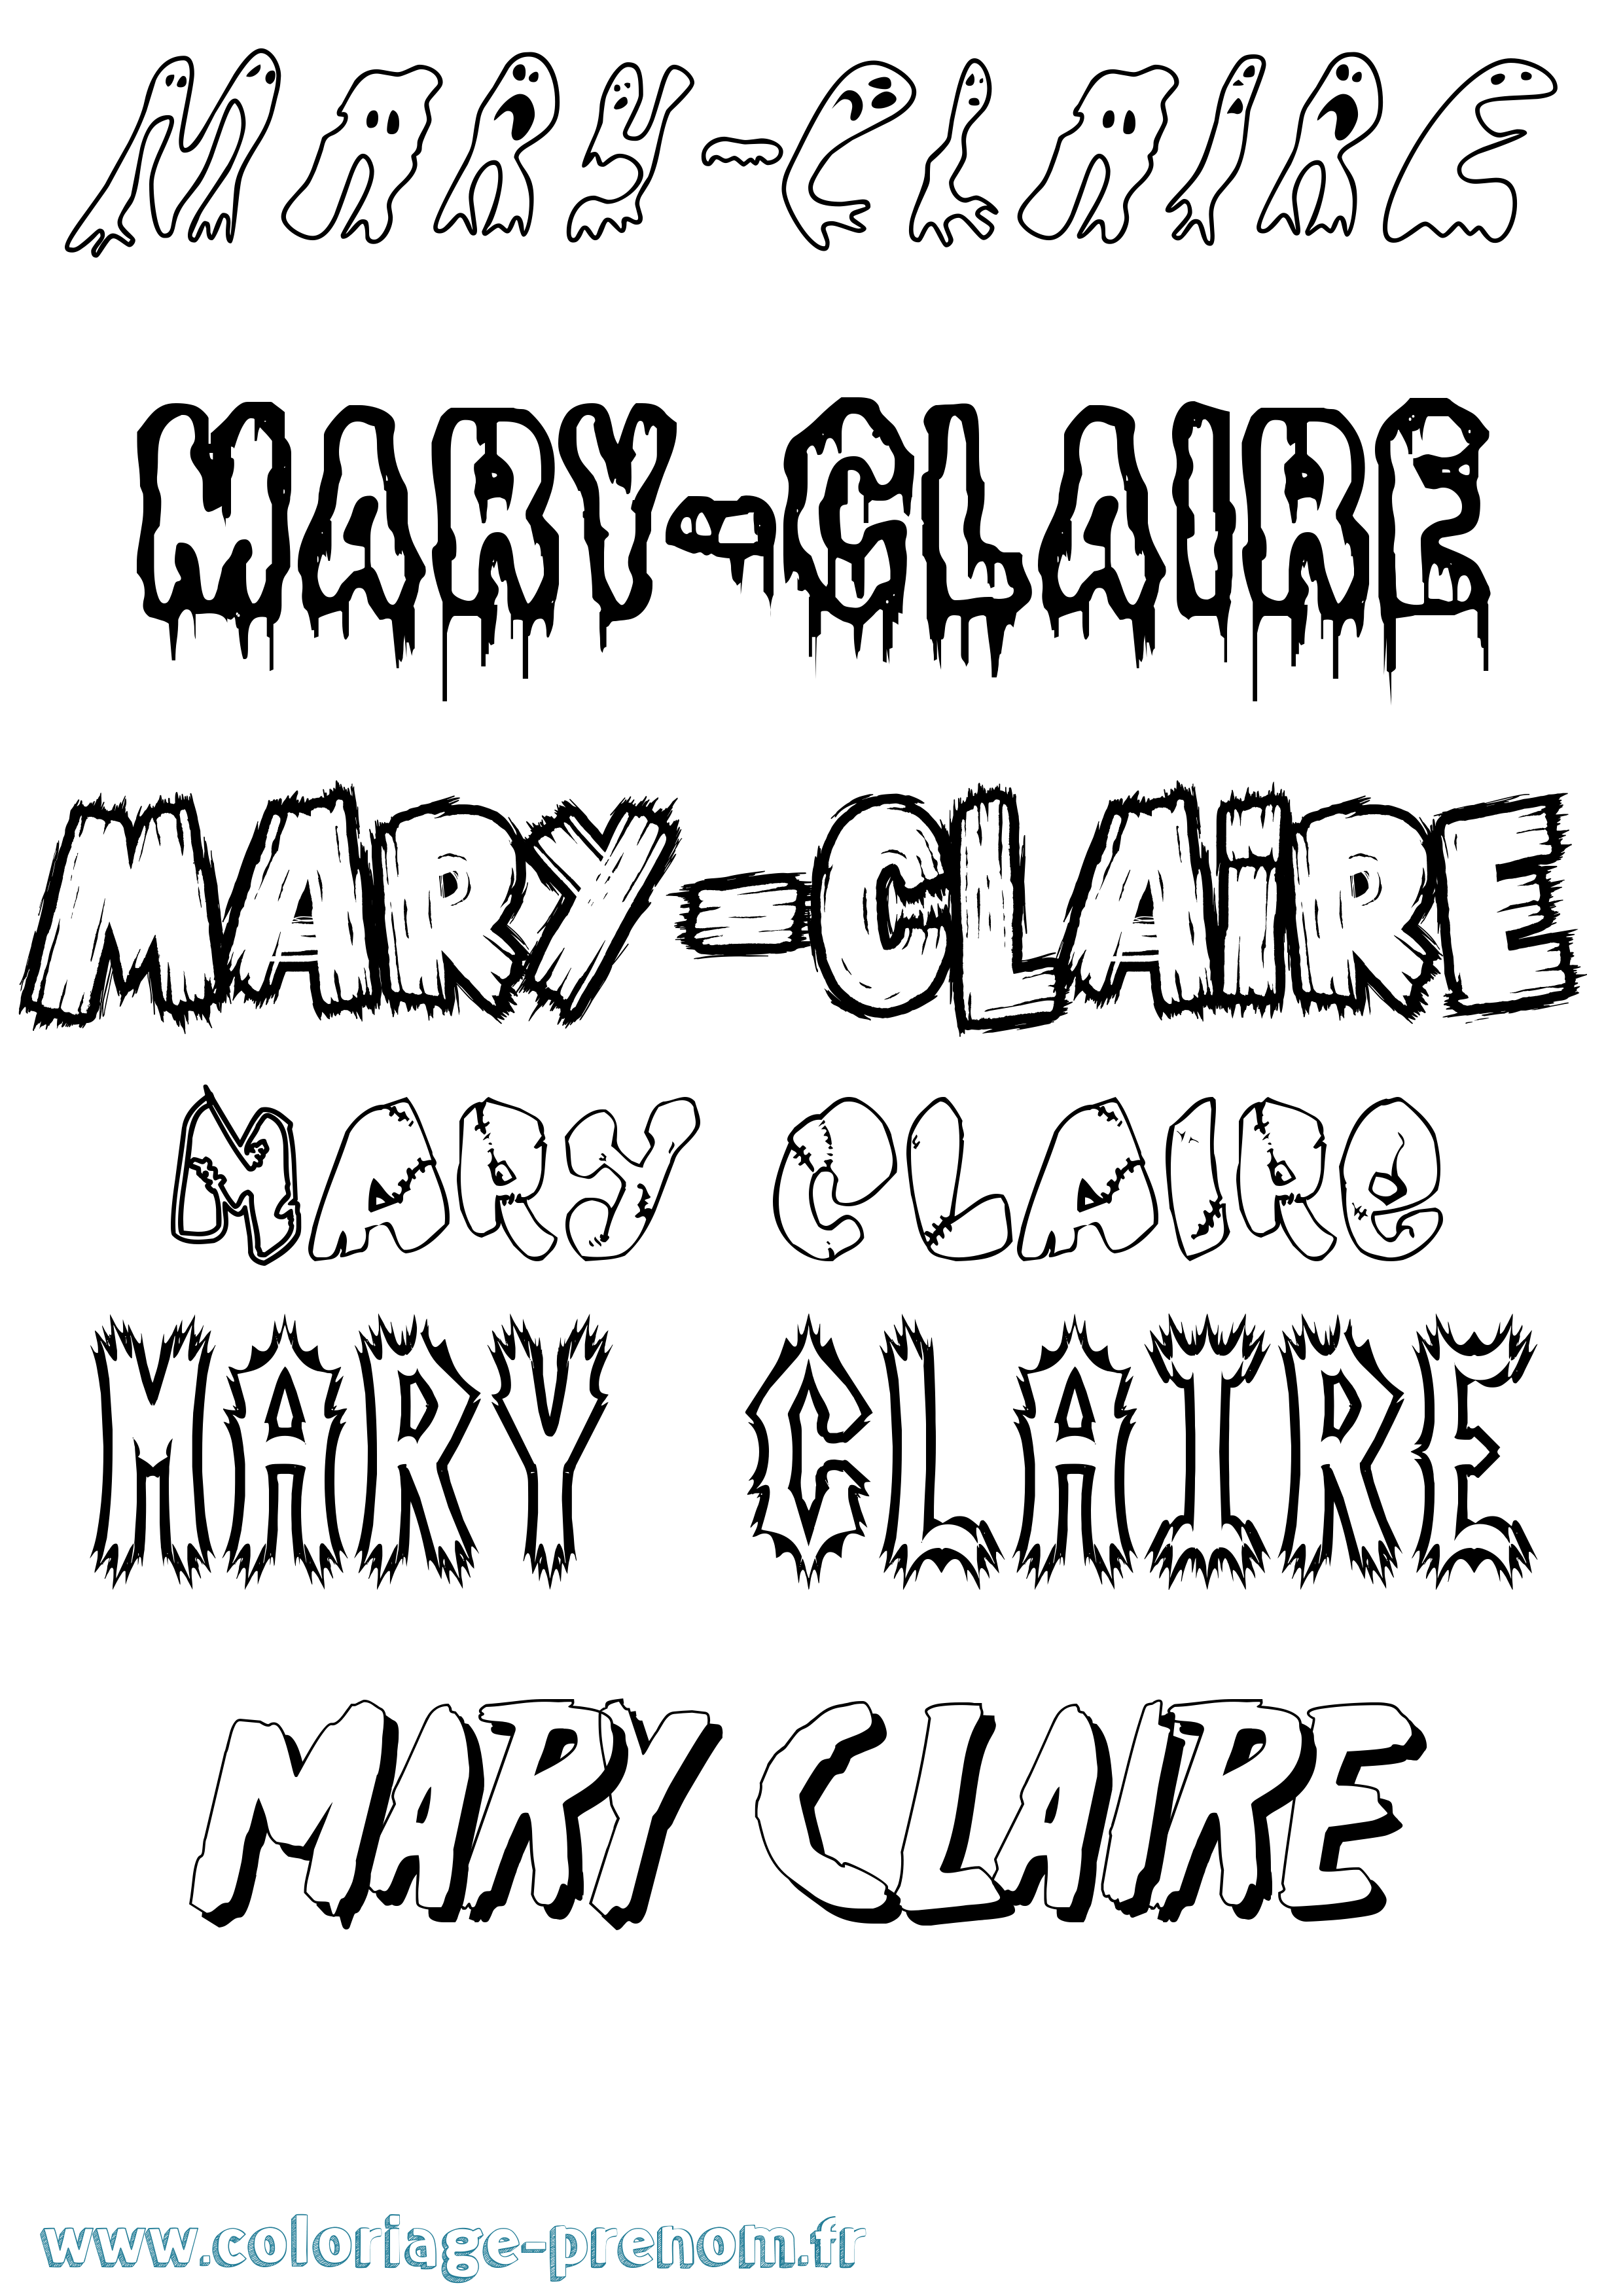 Coloriage prénom Mary-Claire Frisson